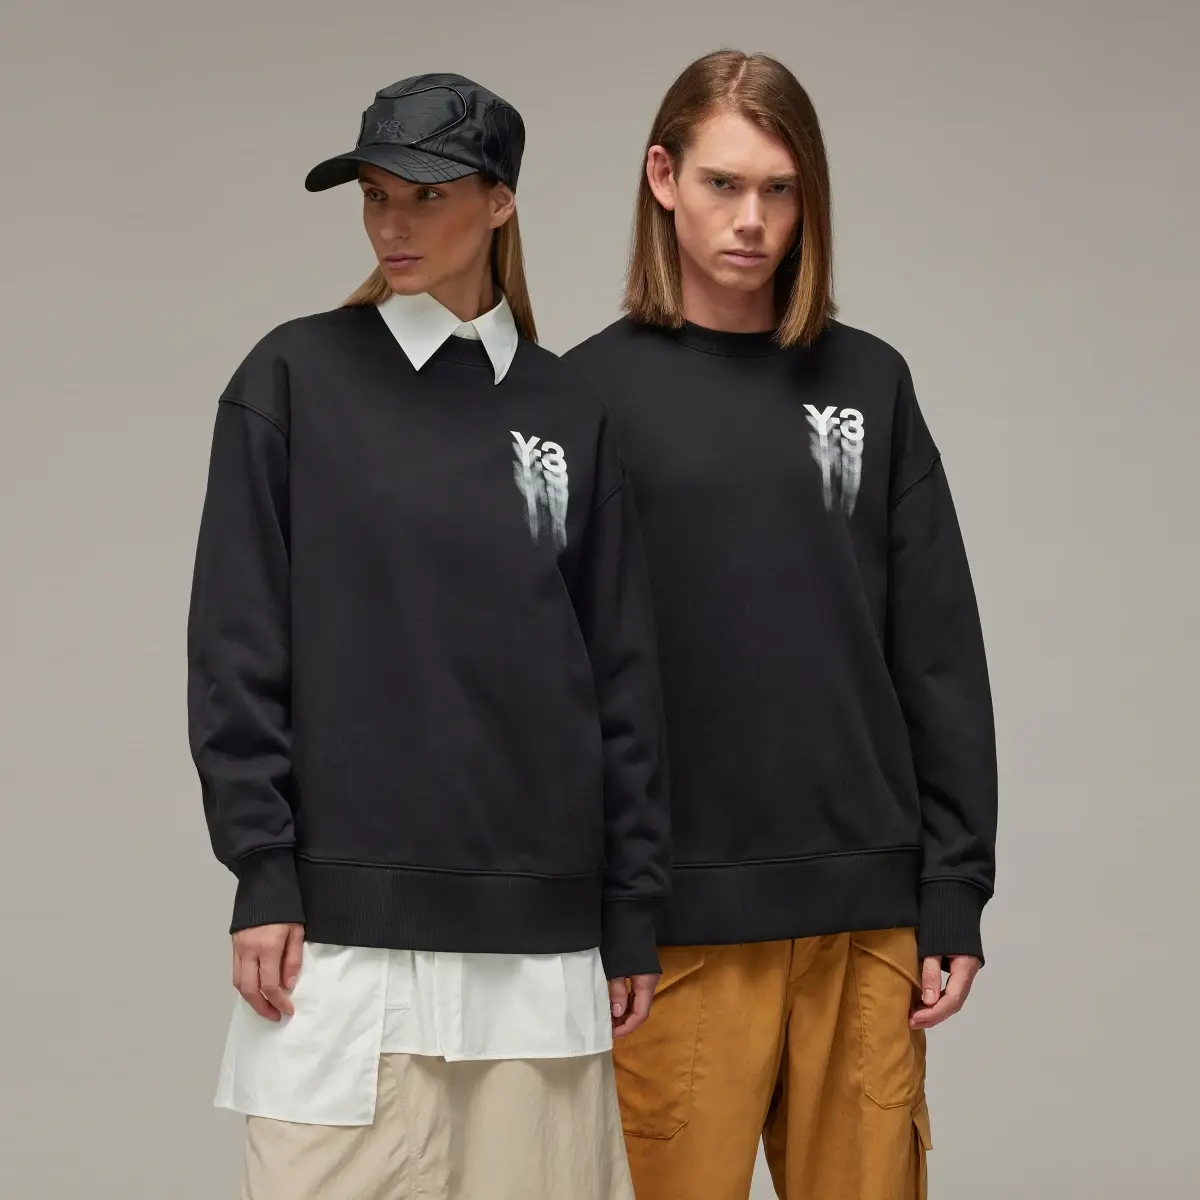 Adidas Y-3 Graphic Crew Sweatshirt. 1